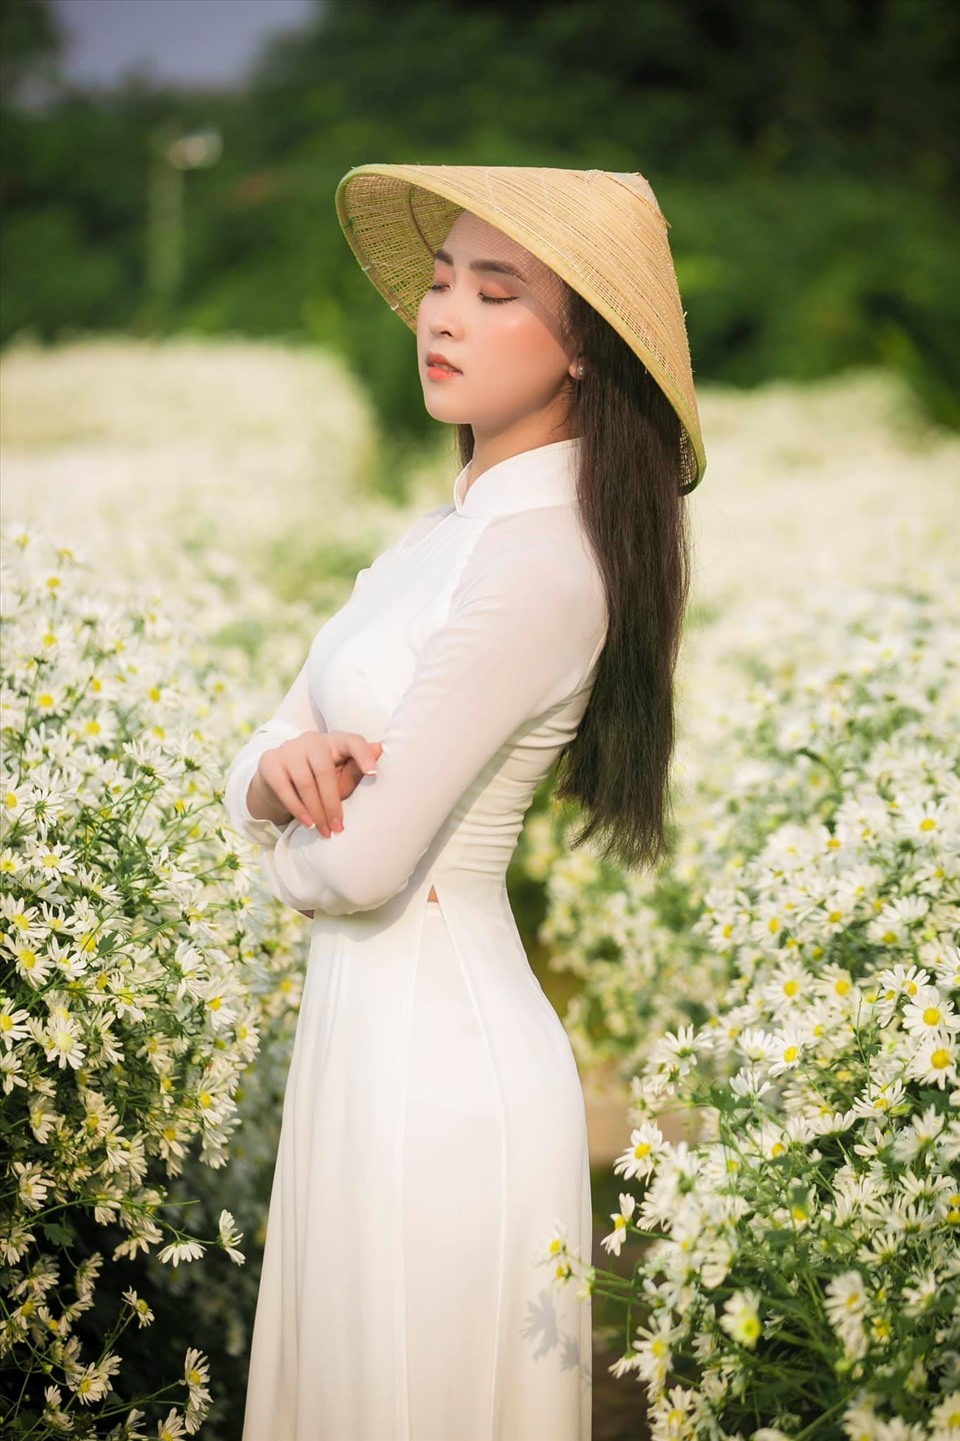 Ngô Thị Diệu Ngân khiến nhiều người tiếc nuối khi vắng mặt trong Top 35 Hoa hậu Việt Nam 2020  Trong bộ ảnh mới nhất, Diệu Ngân diện chiếc váy khoét lưng khéo léo khoe vẻ gợi cảm